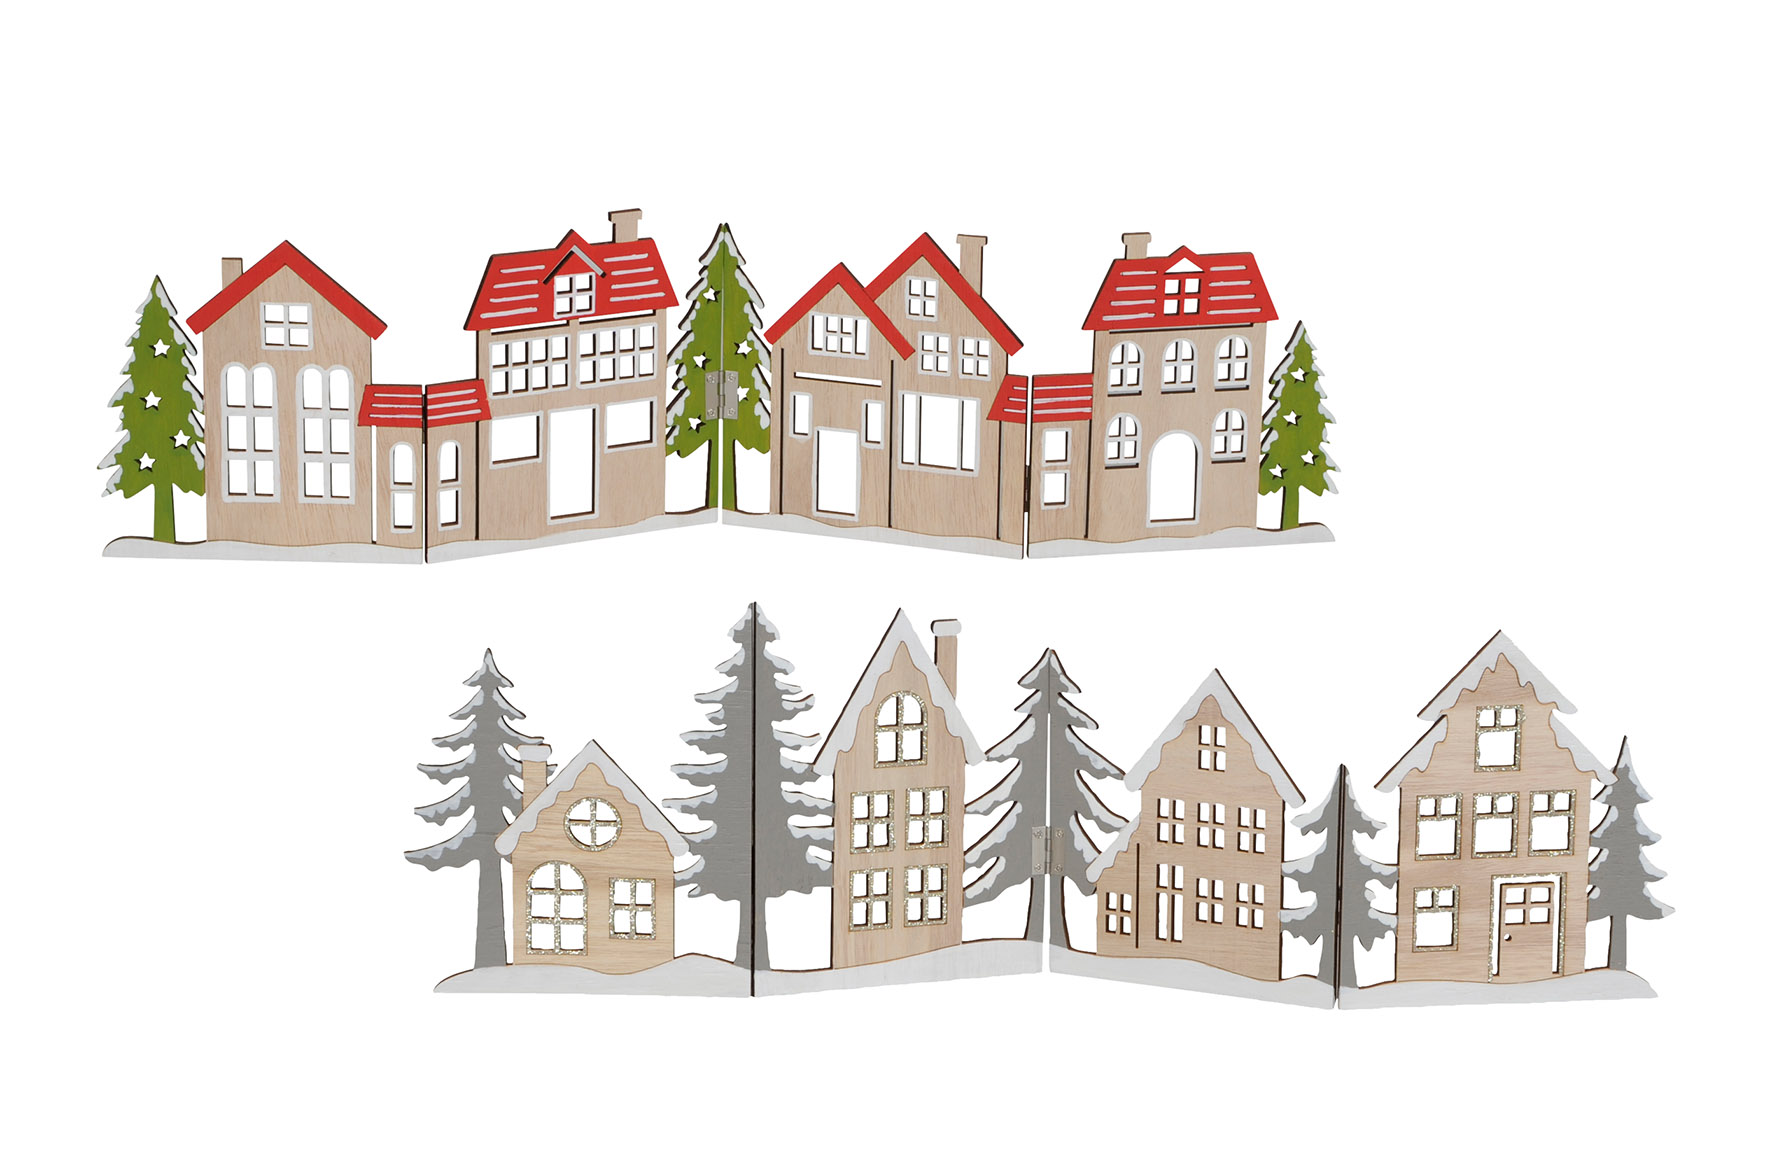 Deko Häuserzeile aus Holz klappbar 60 x 16 cm - 2 Modelle wählbar - Weihnachtsstadt Silhouette zur Tischdekoration